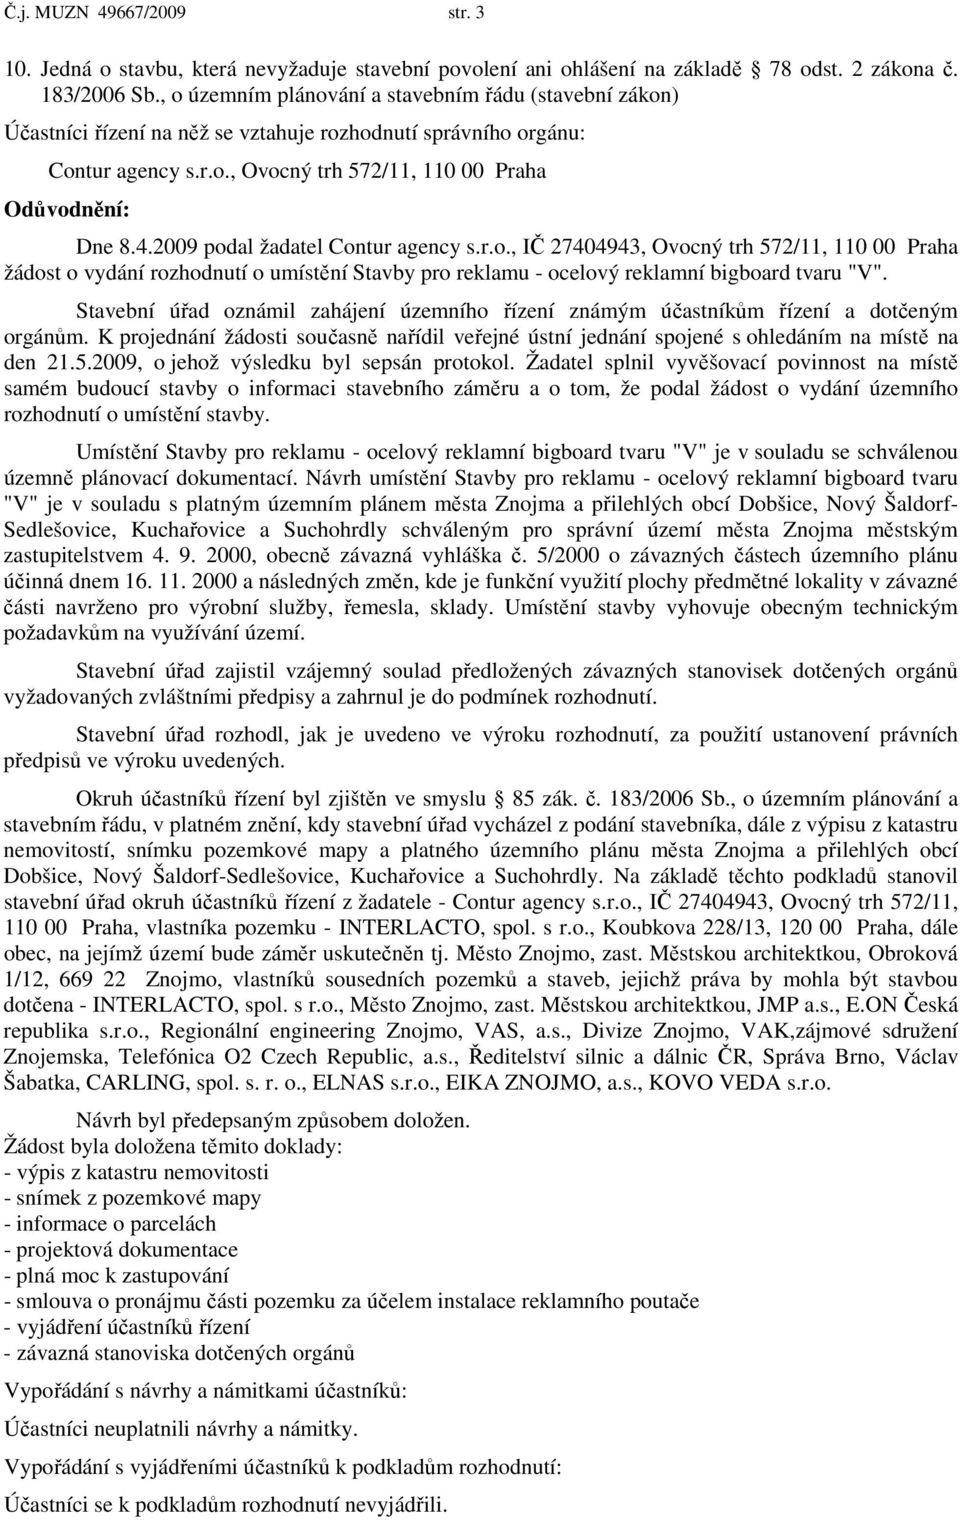 2009 podal žadatel Contur agency s.r.o., IČ 27404943, Ovocný trh 572/11, 110 00 Praha žádost o vydání rozhodnutí o umístění Stavby pro reklamu - ocelový reklamní bigboard tvaru "V".